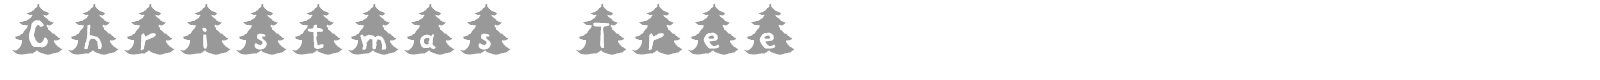 Font Christmas Tree